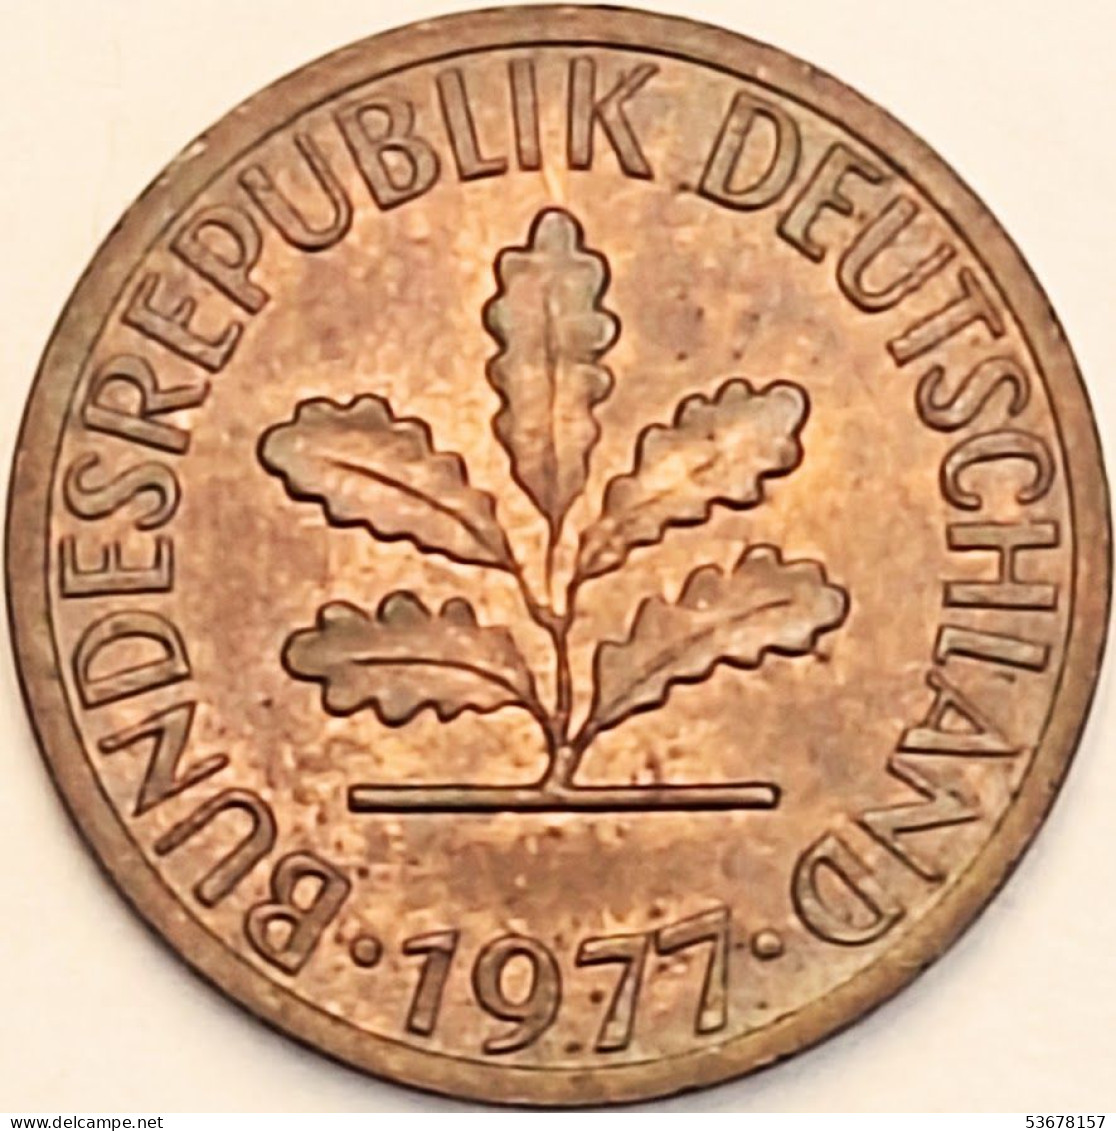 Germany Federal Republic - Pfennig 1977 J, KM# 105 (#4474) - 1 Pfennig